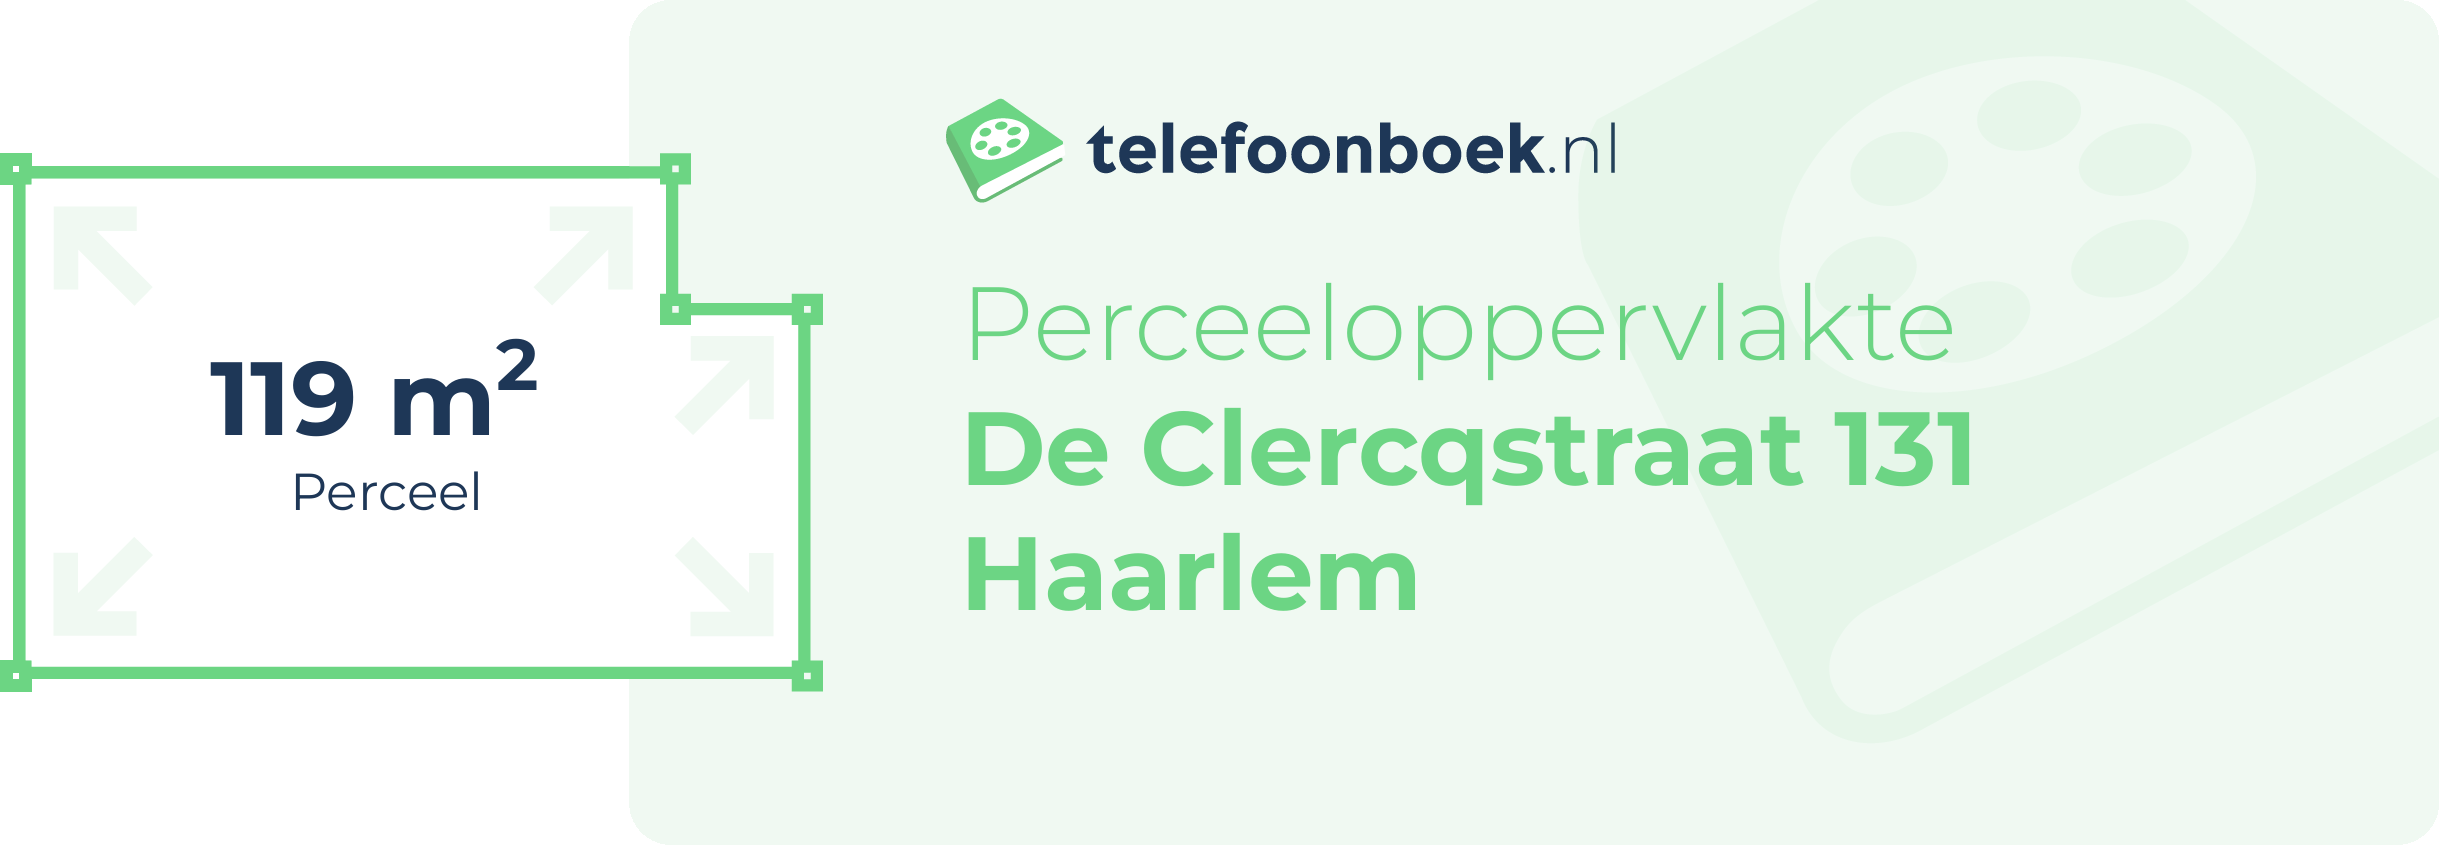 Perceeloppervlakte De Clercqstraat 131 Haarlem